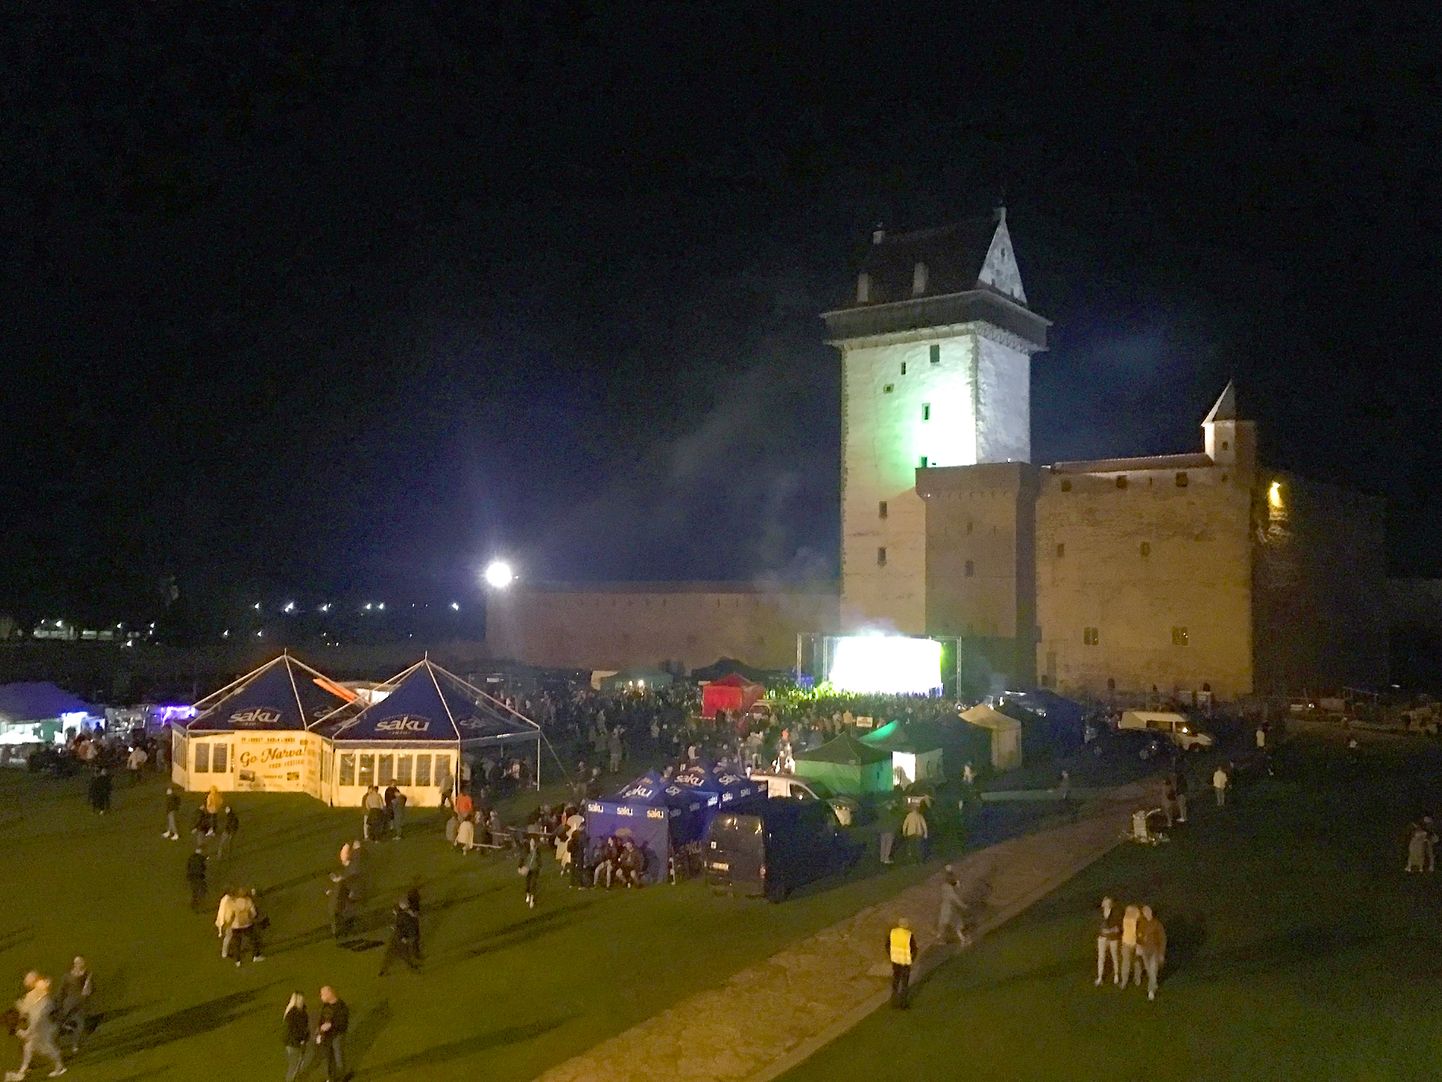 Фестиваль "Go Narva!" завершился глубокой ночью, собрав во дворе Нарвского замка порядка 2000 любителей рок-музыки.